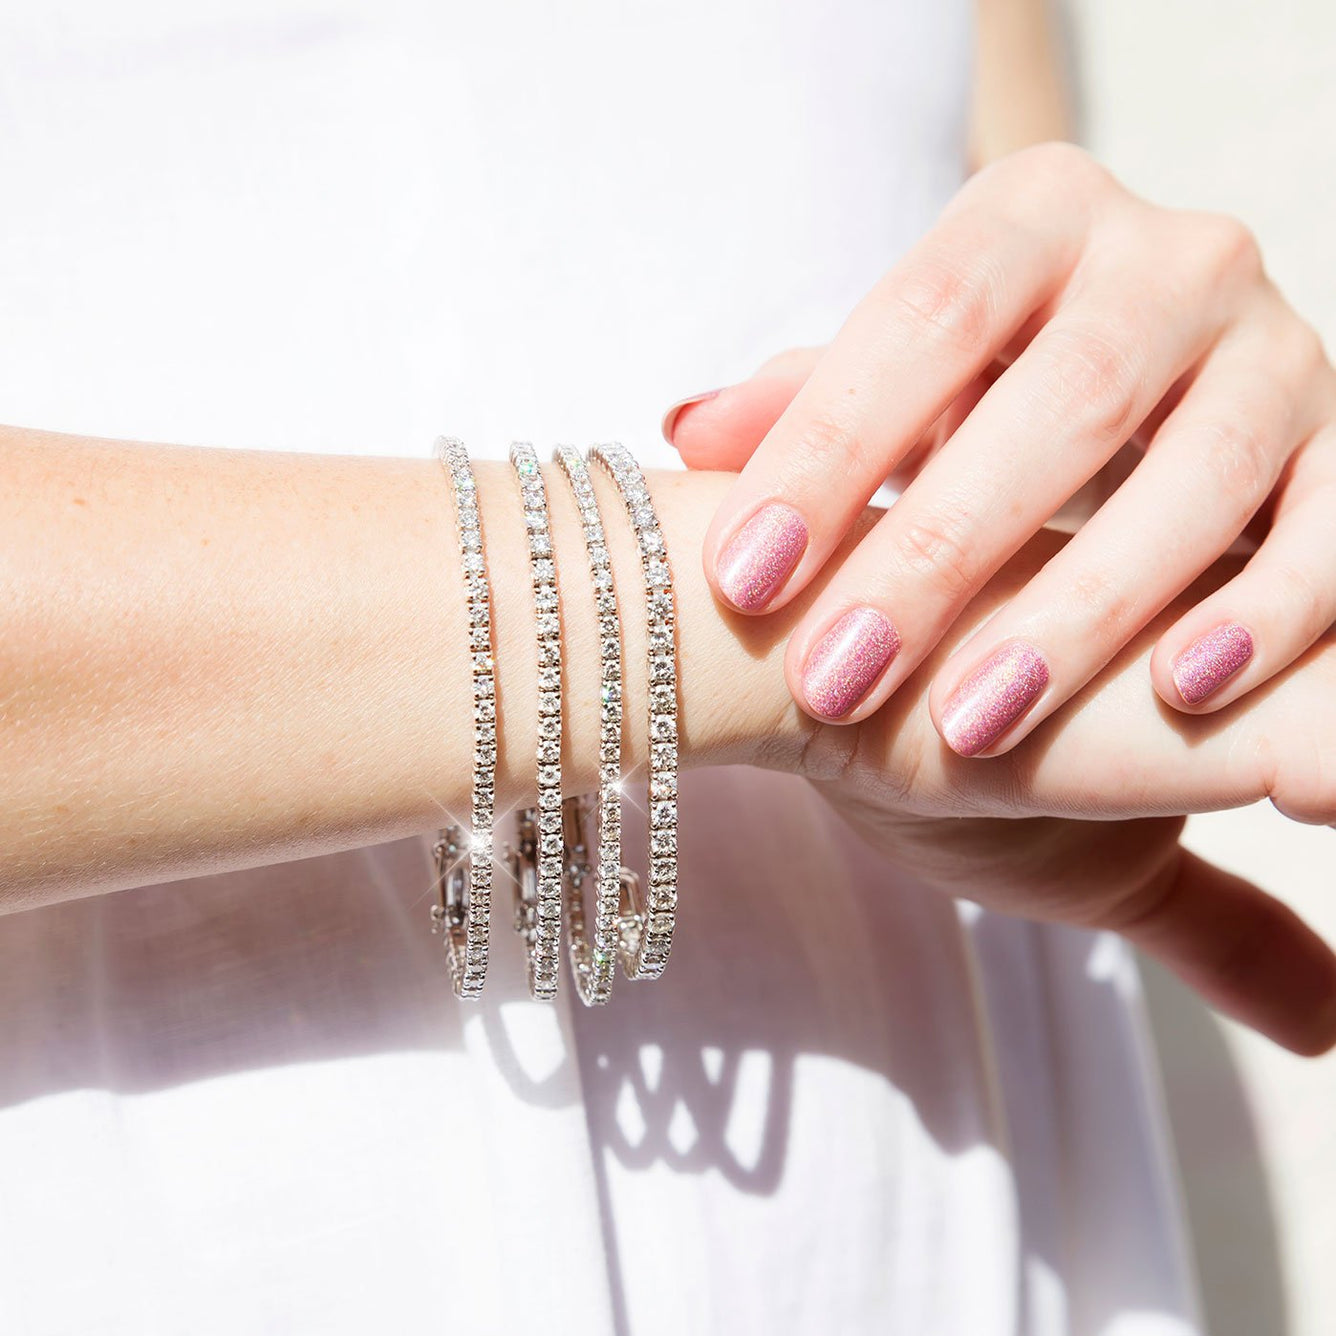 Bracelets en or & bracelet or 18 carats